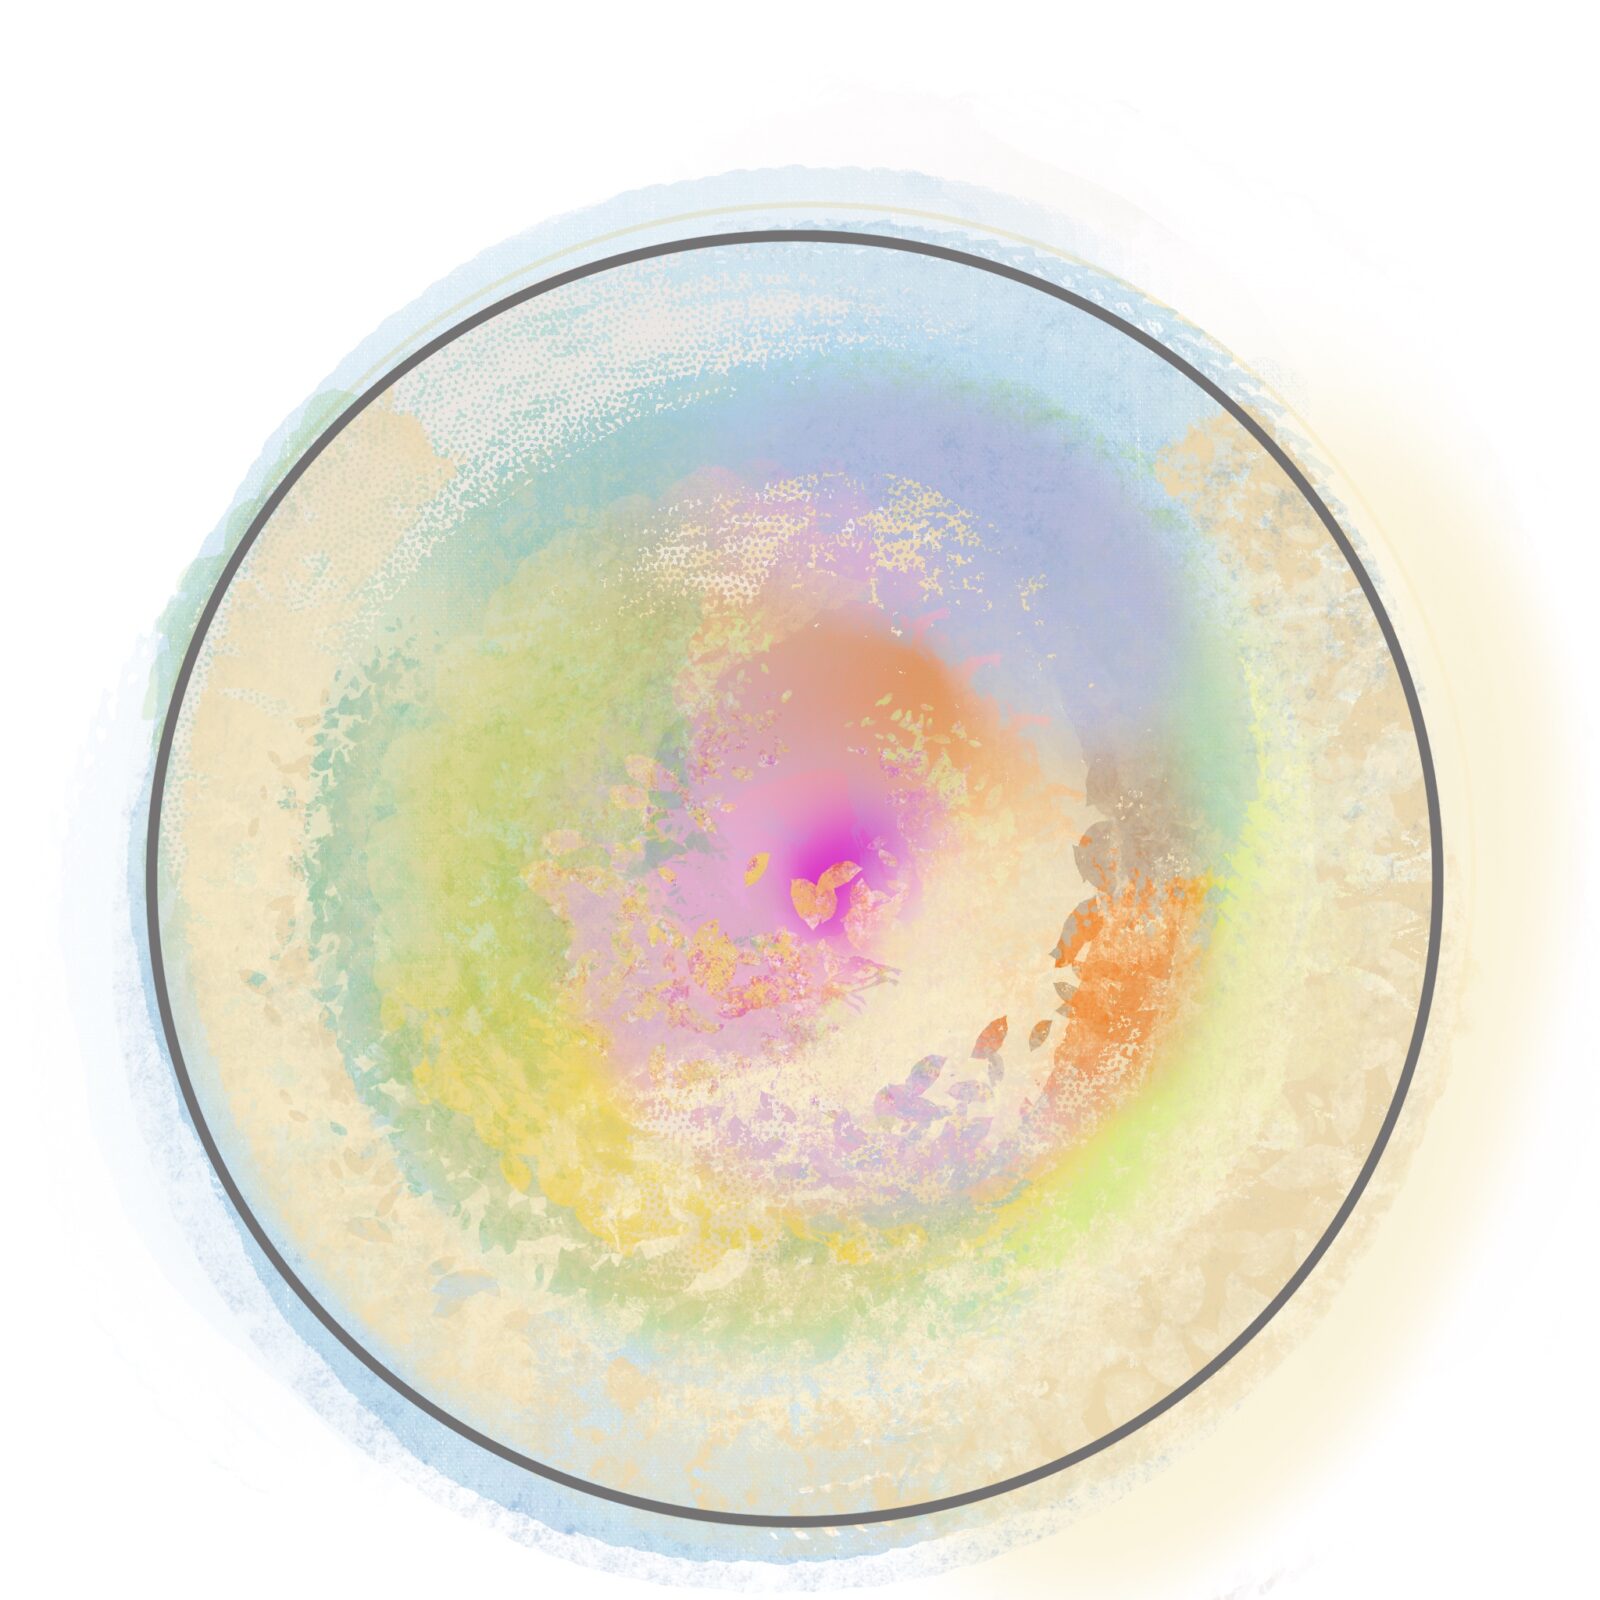 Graphischer Entwurf für ein rundes Bild in Pastelltönen. Die Farben gehen in pastellkreidetechnik in einander über. Im Zentrum von Pink und Orange über Blautöne bis zu ruhigen Cremetönen an der Aussenkante.